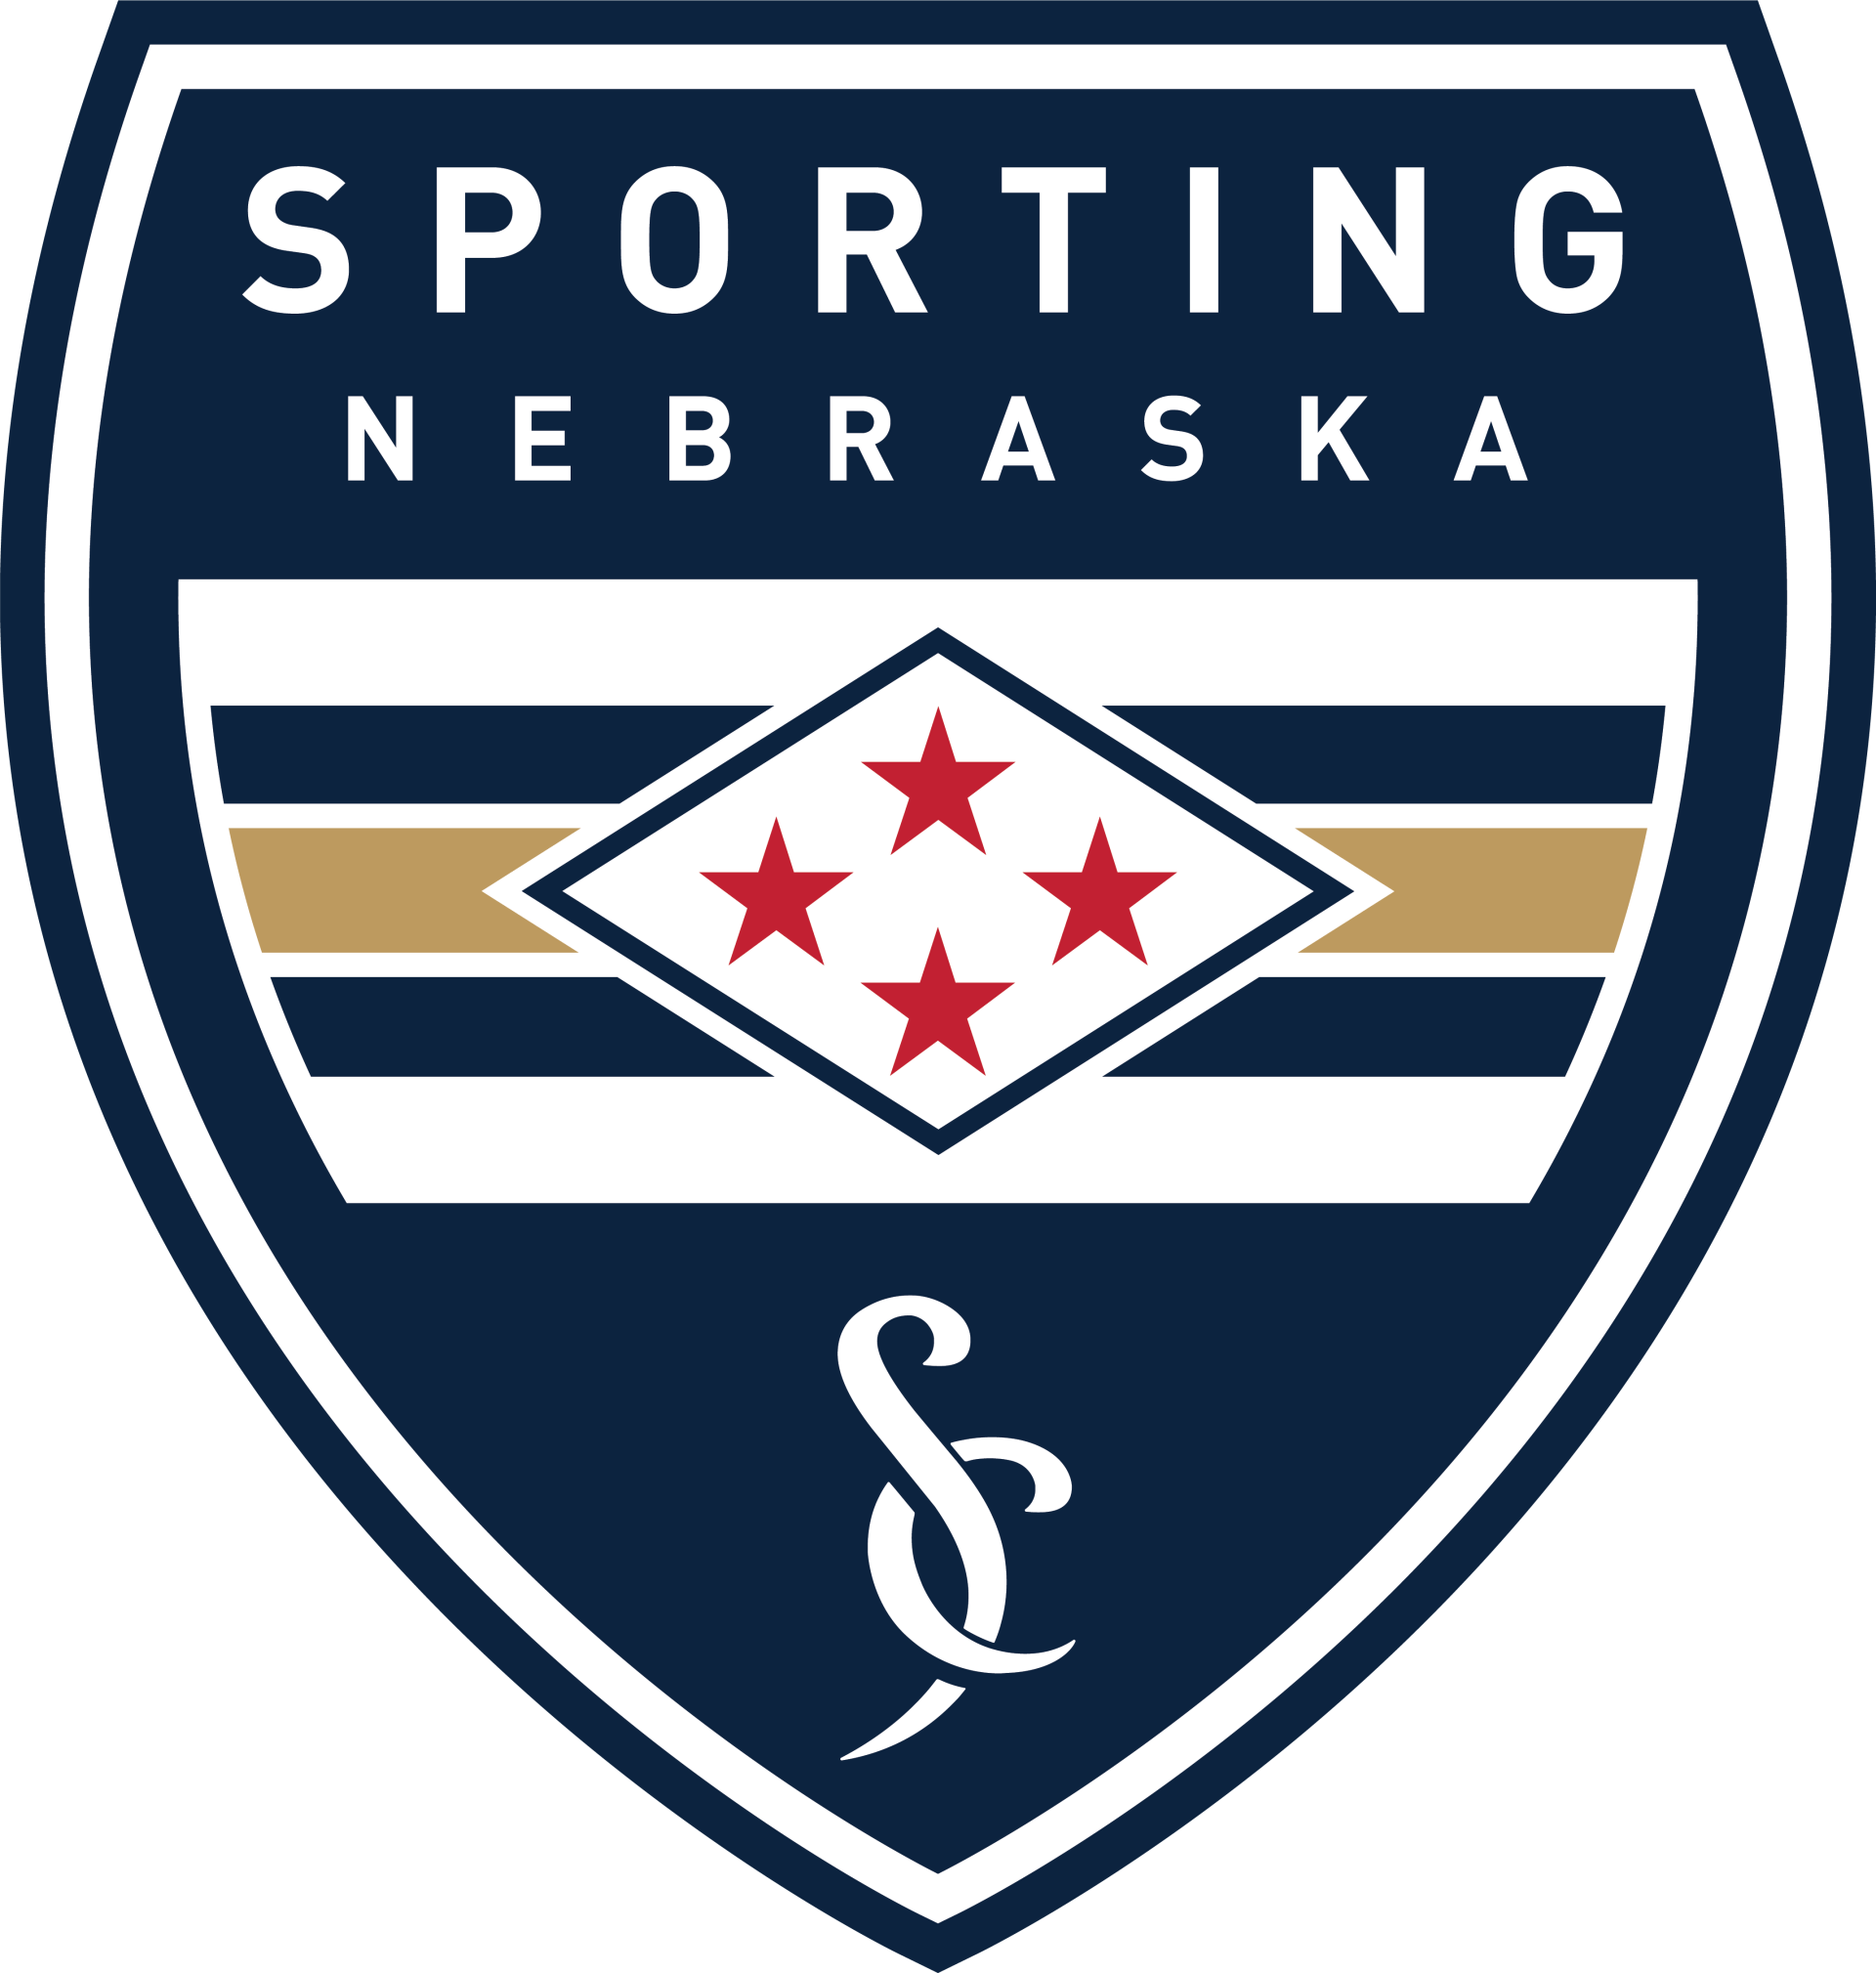 Sporting Nebraska